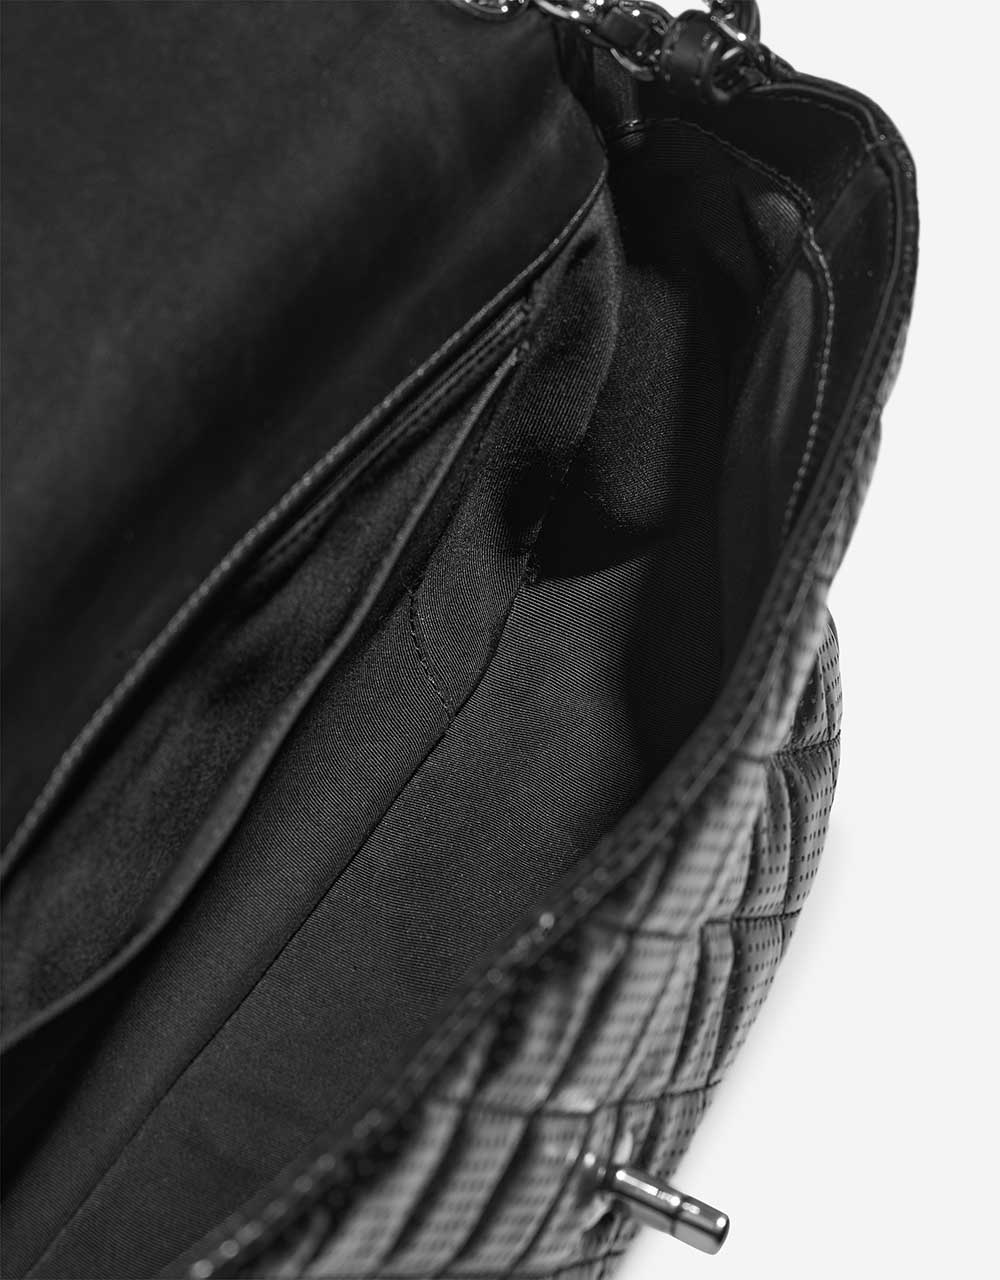 Chanel Timeless Jumbo Black Inside | Verkaufen Sie Ihre Designer-Tasche auf Saclab.com